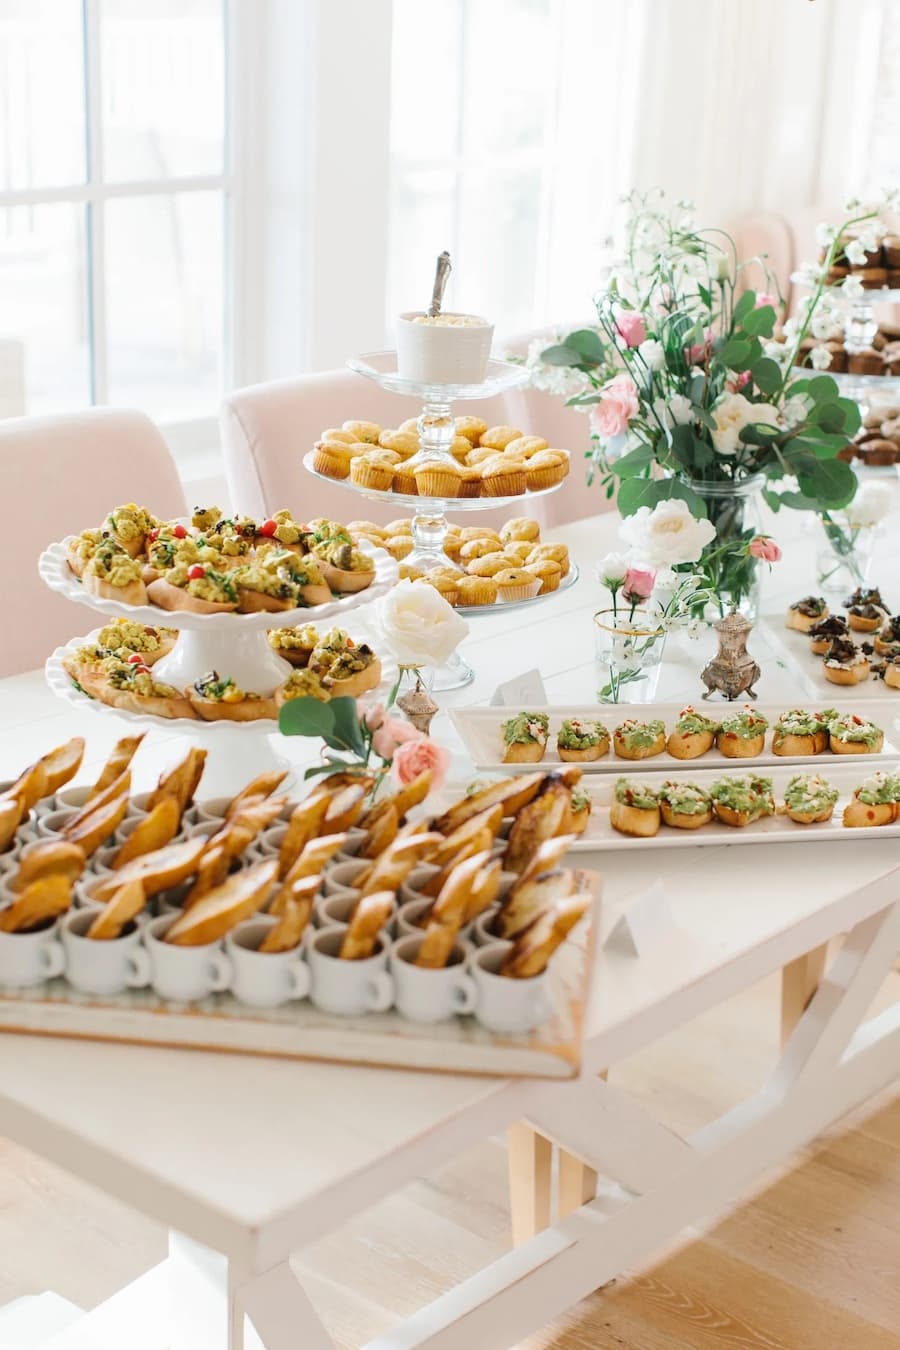 Mesa con sándwiches y snacks salados dispuestos en diferentes bandejas de color blanco. Al centro hay un arreglo floral.